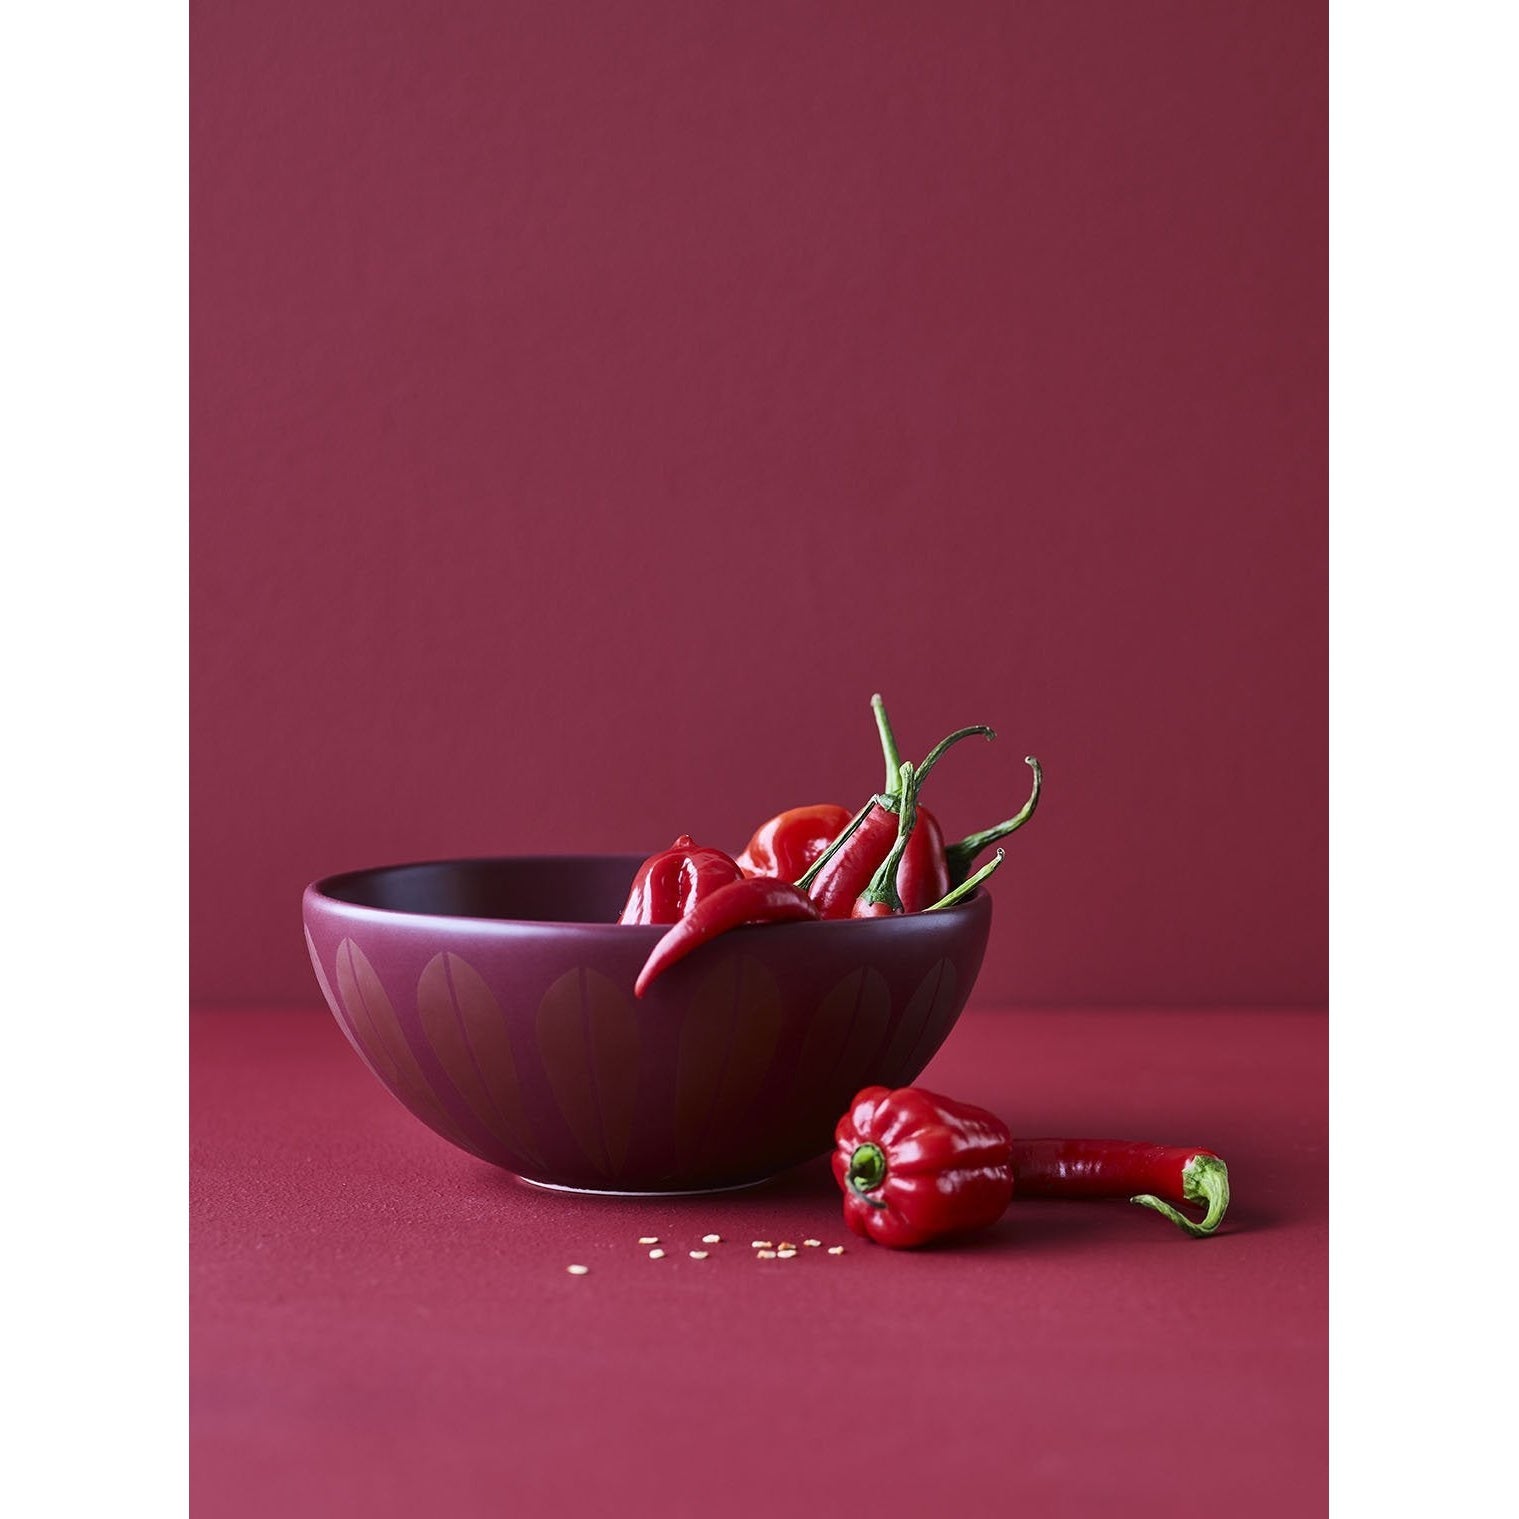 Lucie Kaas Arne Clausen Bowl Red escuro, 24 cm